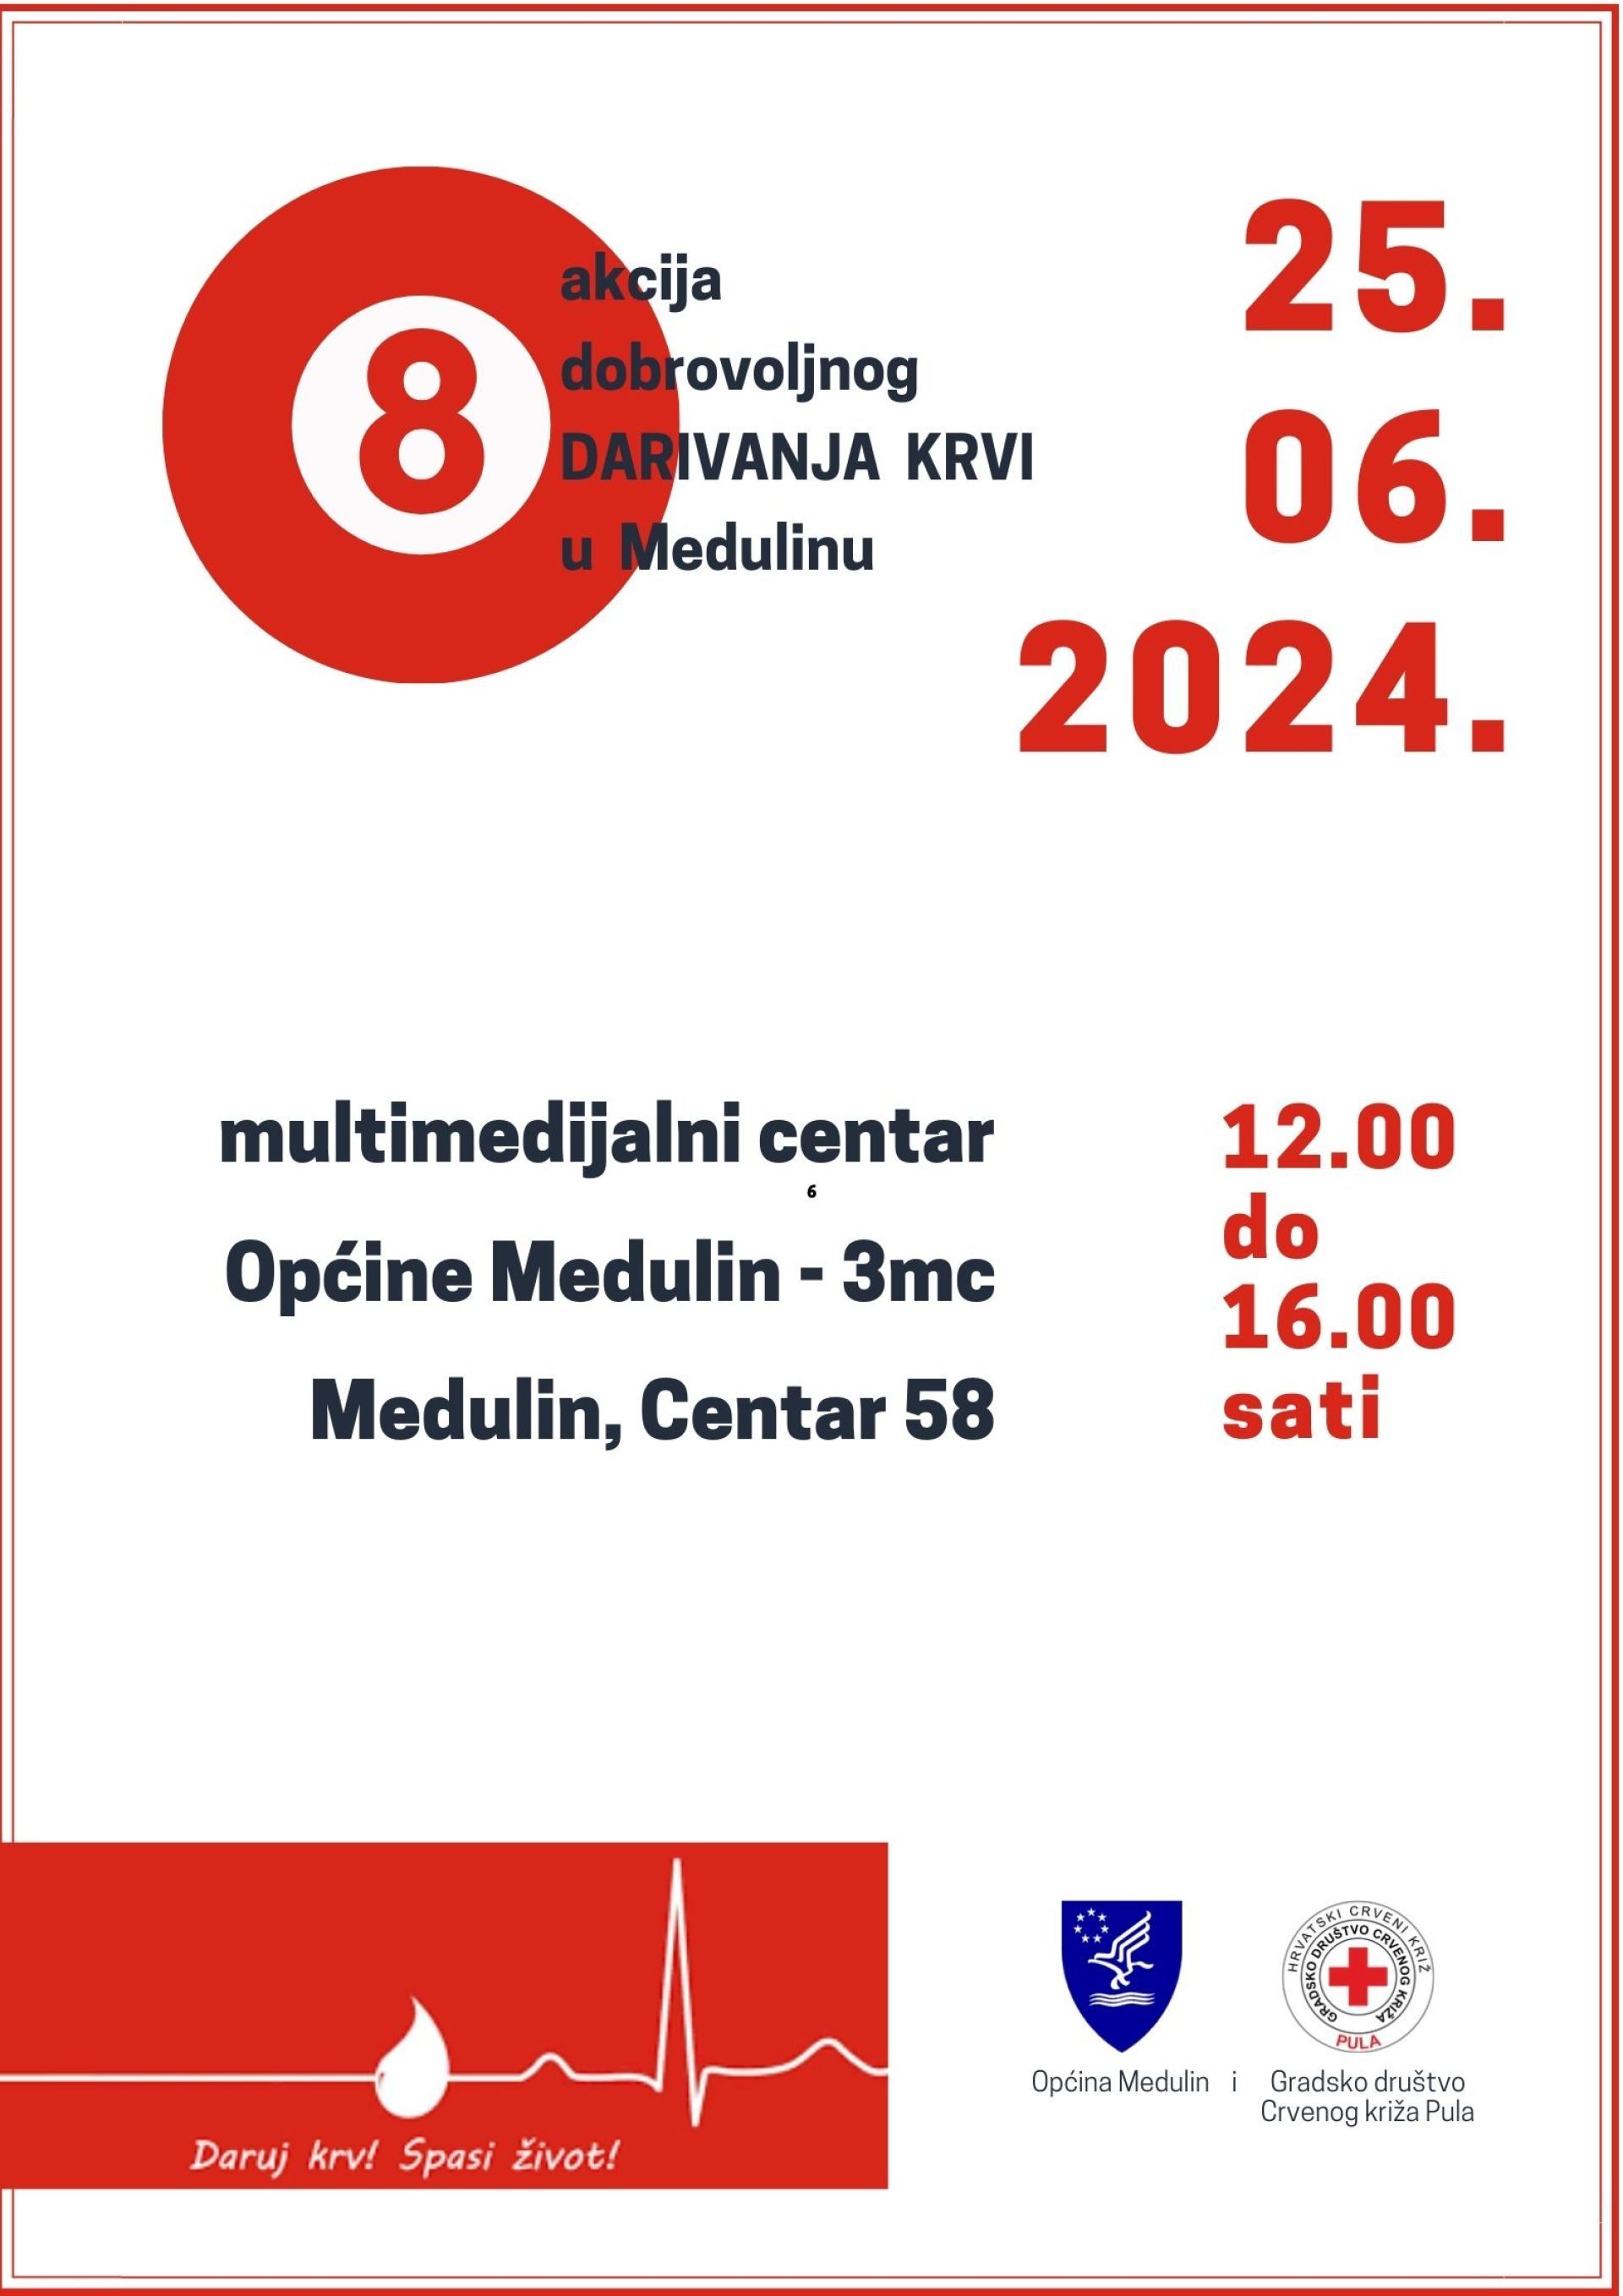 Sutra - 25.06. - 8. akcija dobrovoljnog darivanja krvi u Medulinu